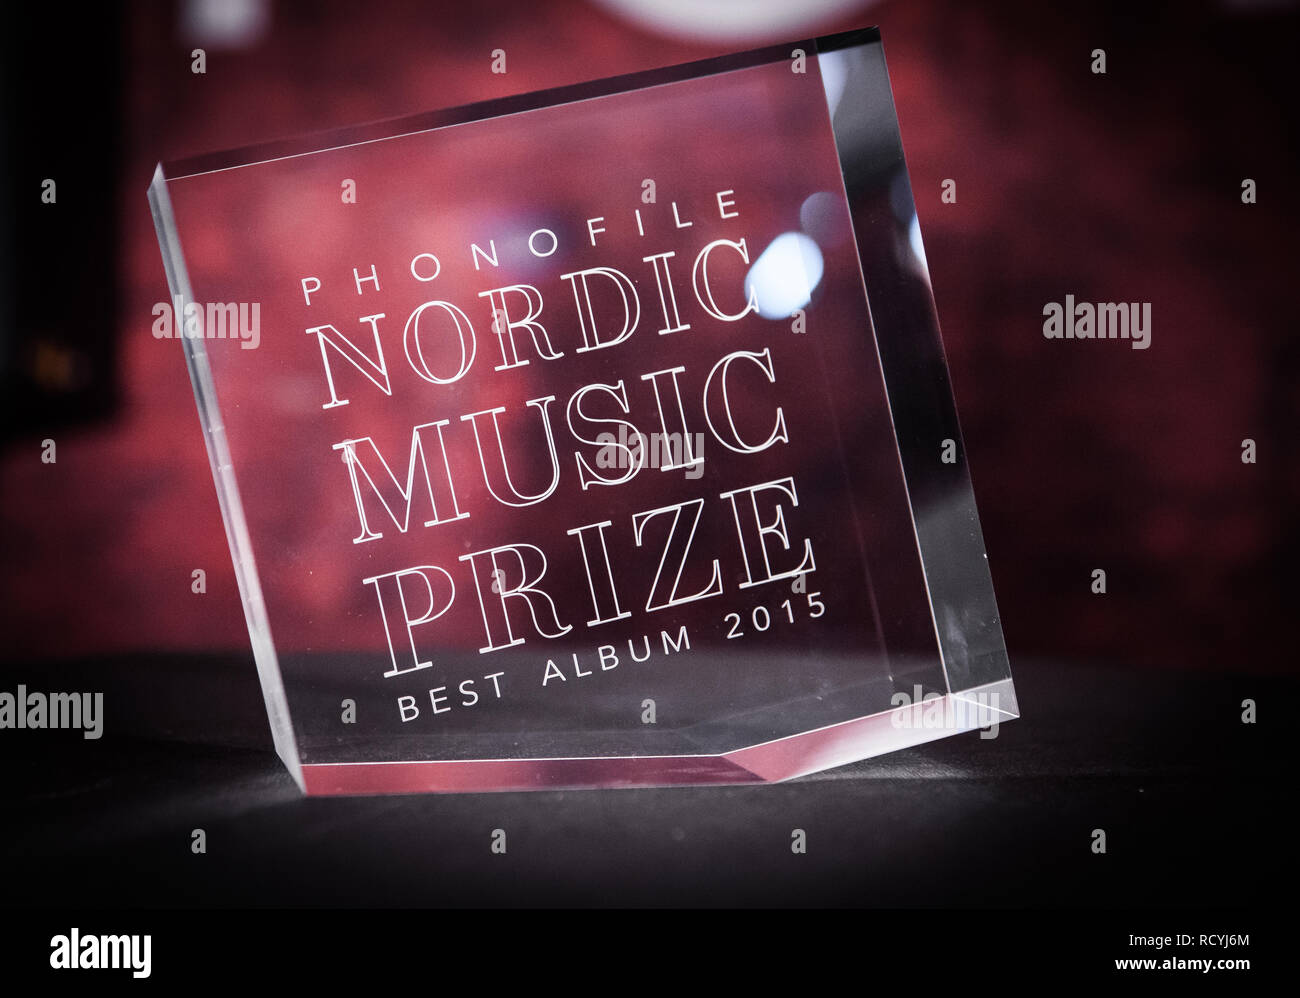 Groupe norvégien de l'or l'album éponyme Band of Gold a reçu le Prix de  musique nordique Phonofile au cours d'une cérémonie de remise de prix lors  du by:Larm jeudi soir. À l'exception